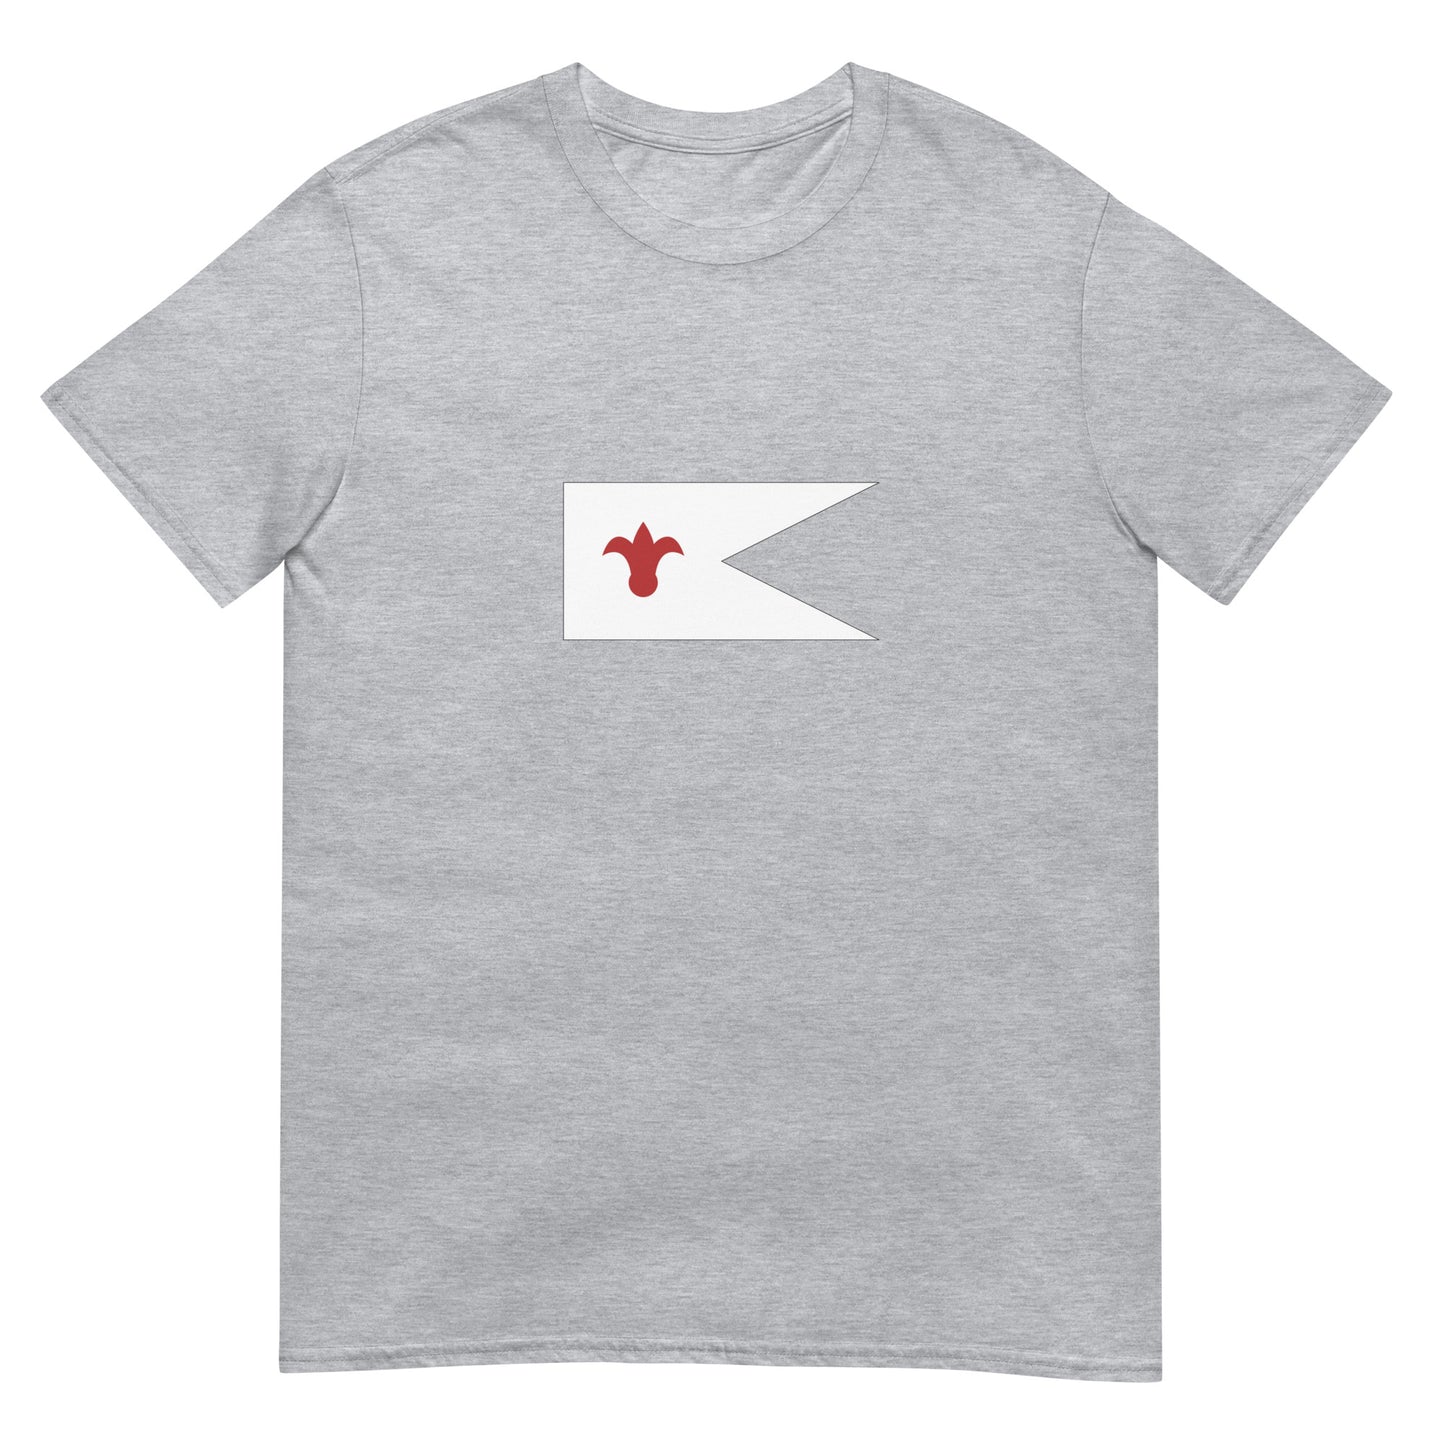 Georgia - Kingdom of Kakheti (1465-1762) | Historical Flags Short-Sleeve Unisex T-Shirt